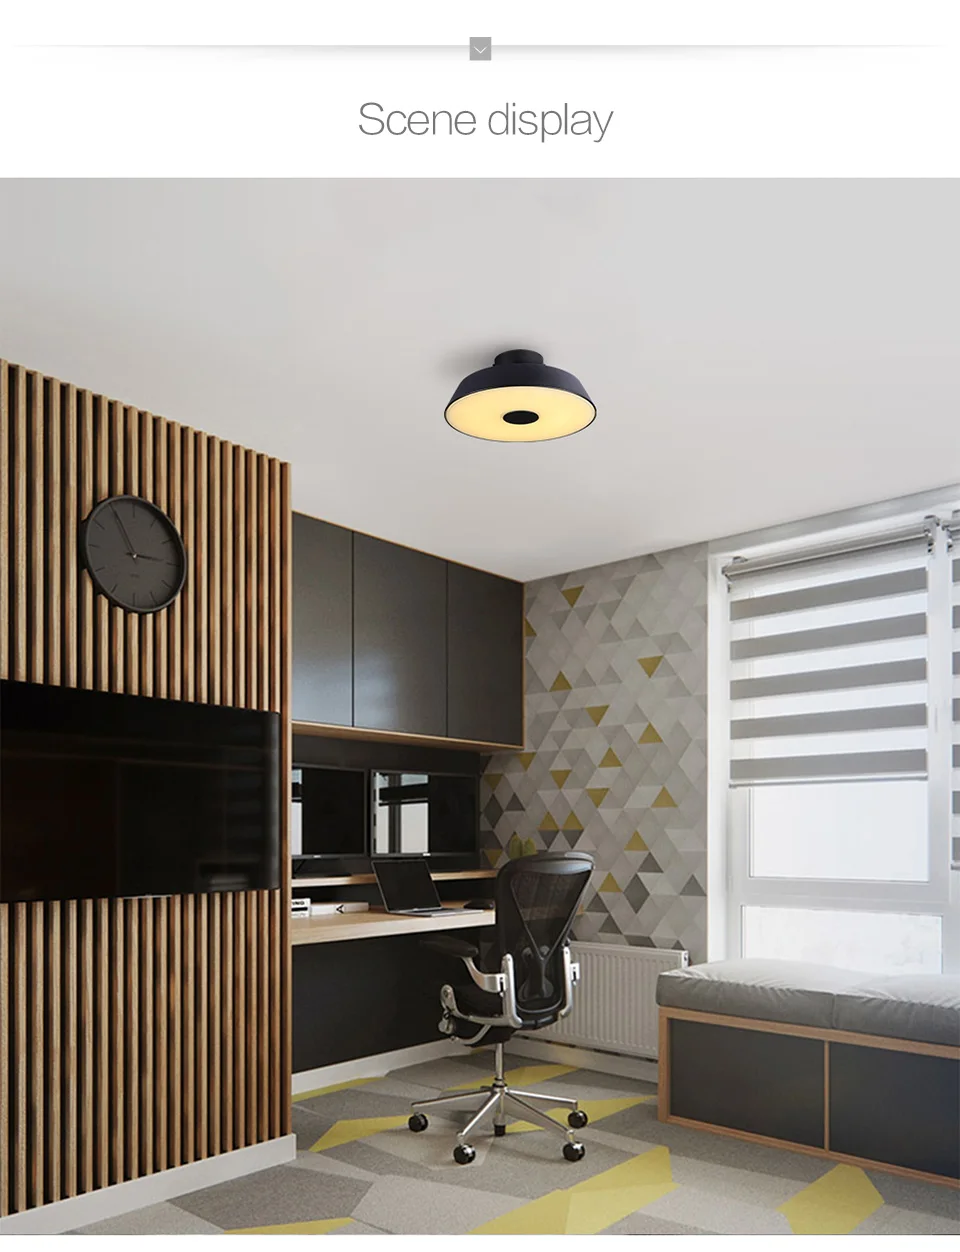 Aisilan Круглый Круг Алюминий современный светодиодный потолочный светильник Регулируемая лампа для гостиной спальня обеденный стол для